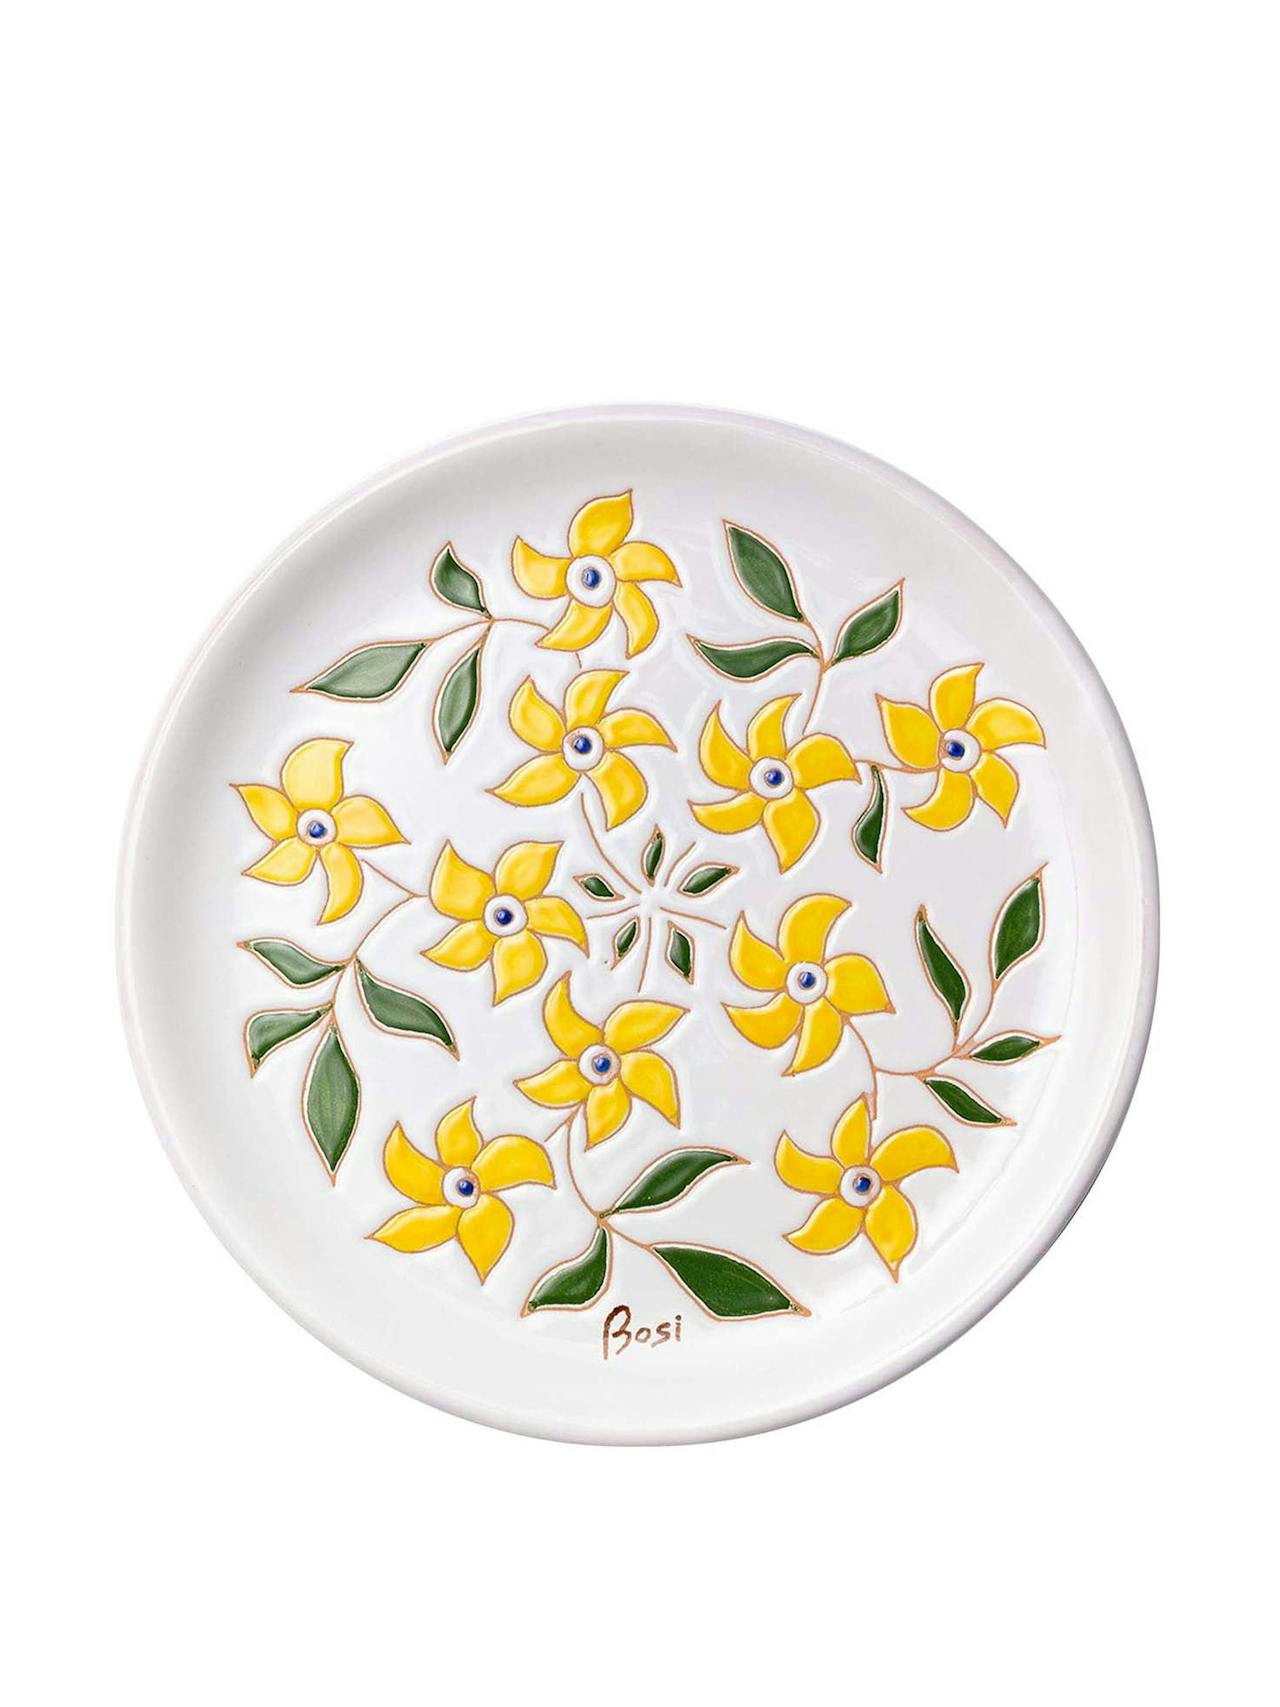 Primavera Gialla yellow and green decorative plate